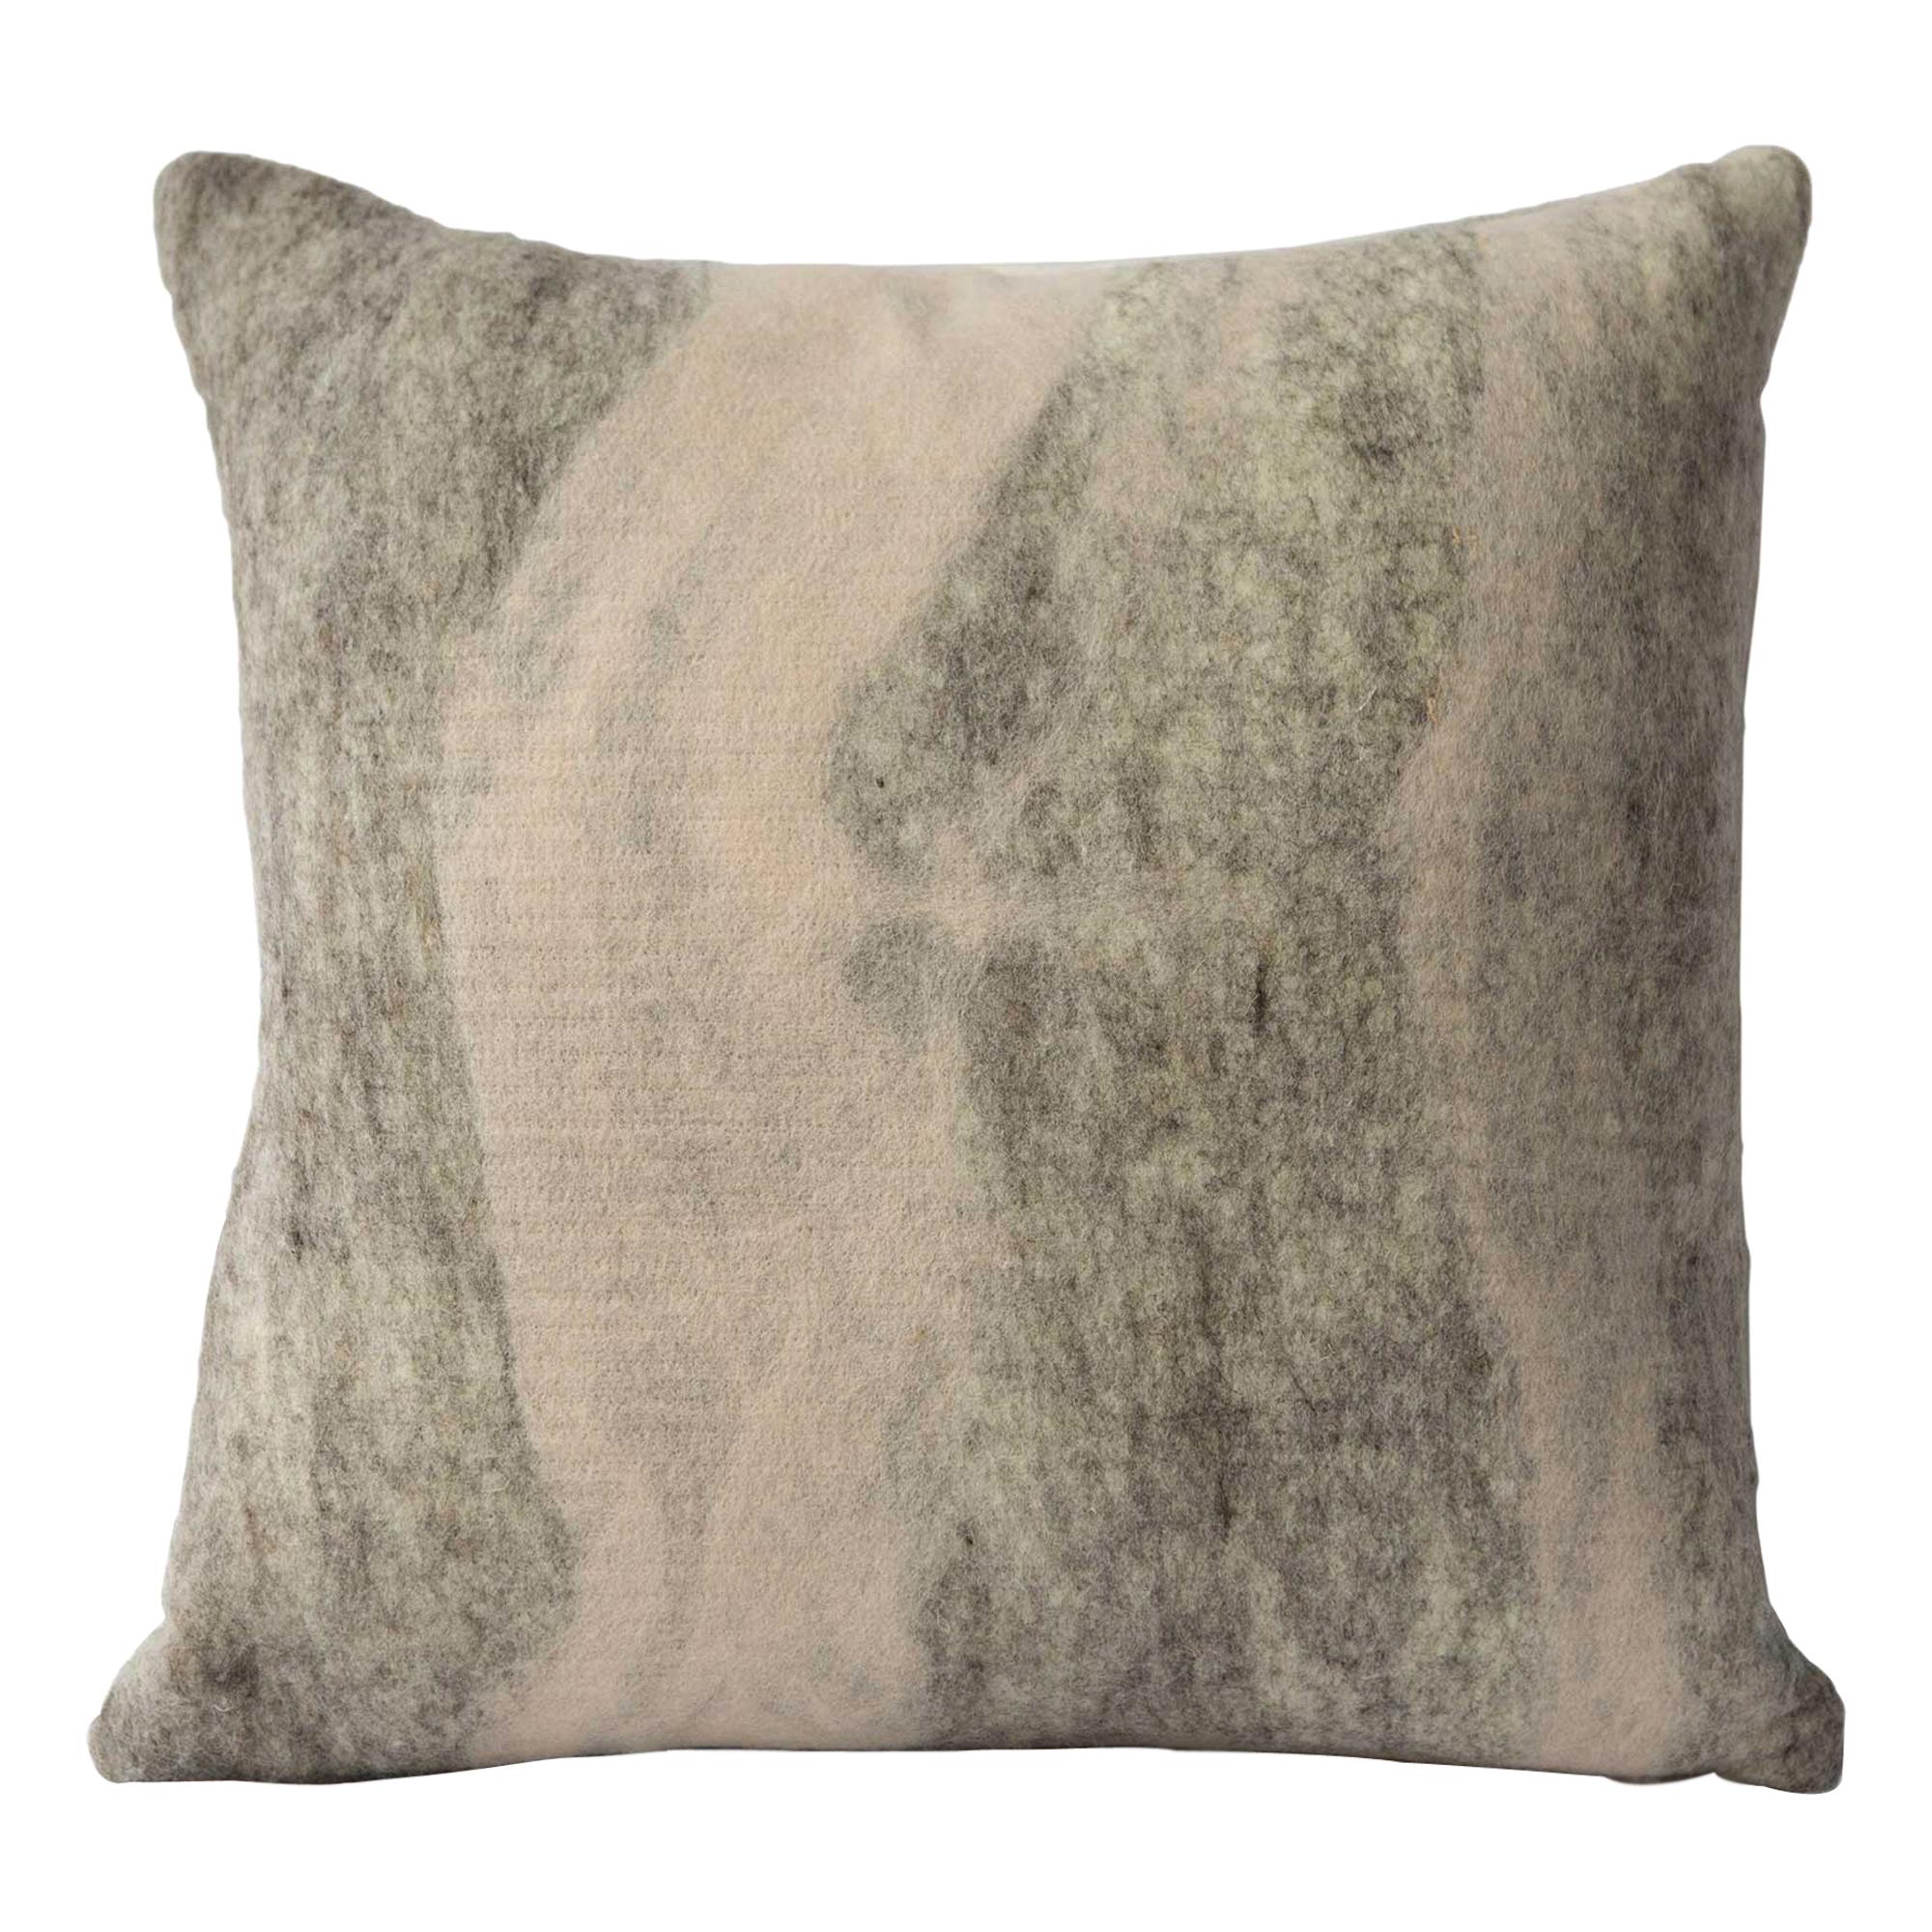 Shetland Wool Rose Pillow, Medium - Heritage Sheep Collection